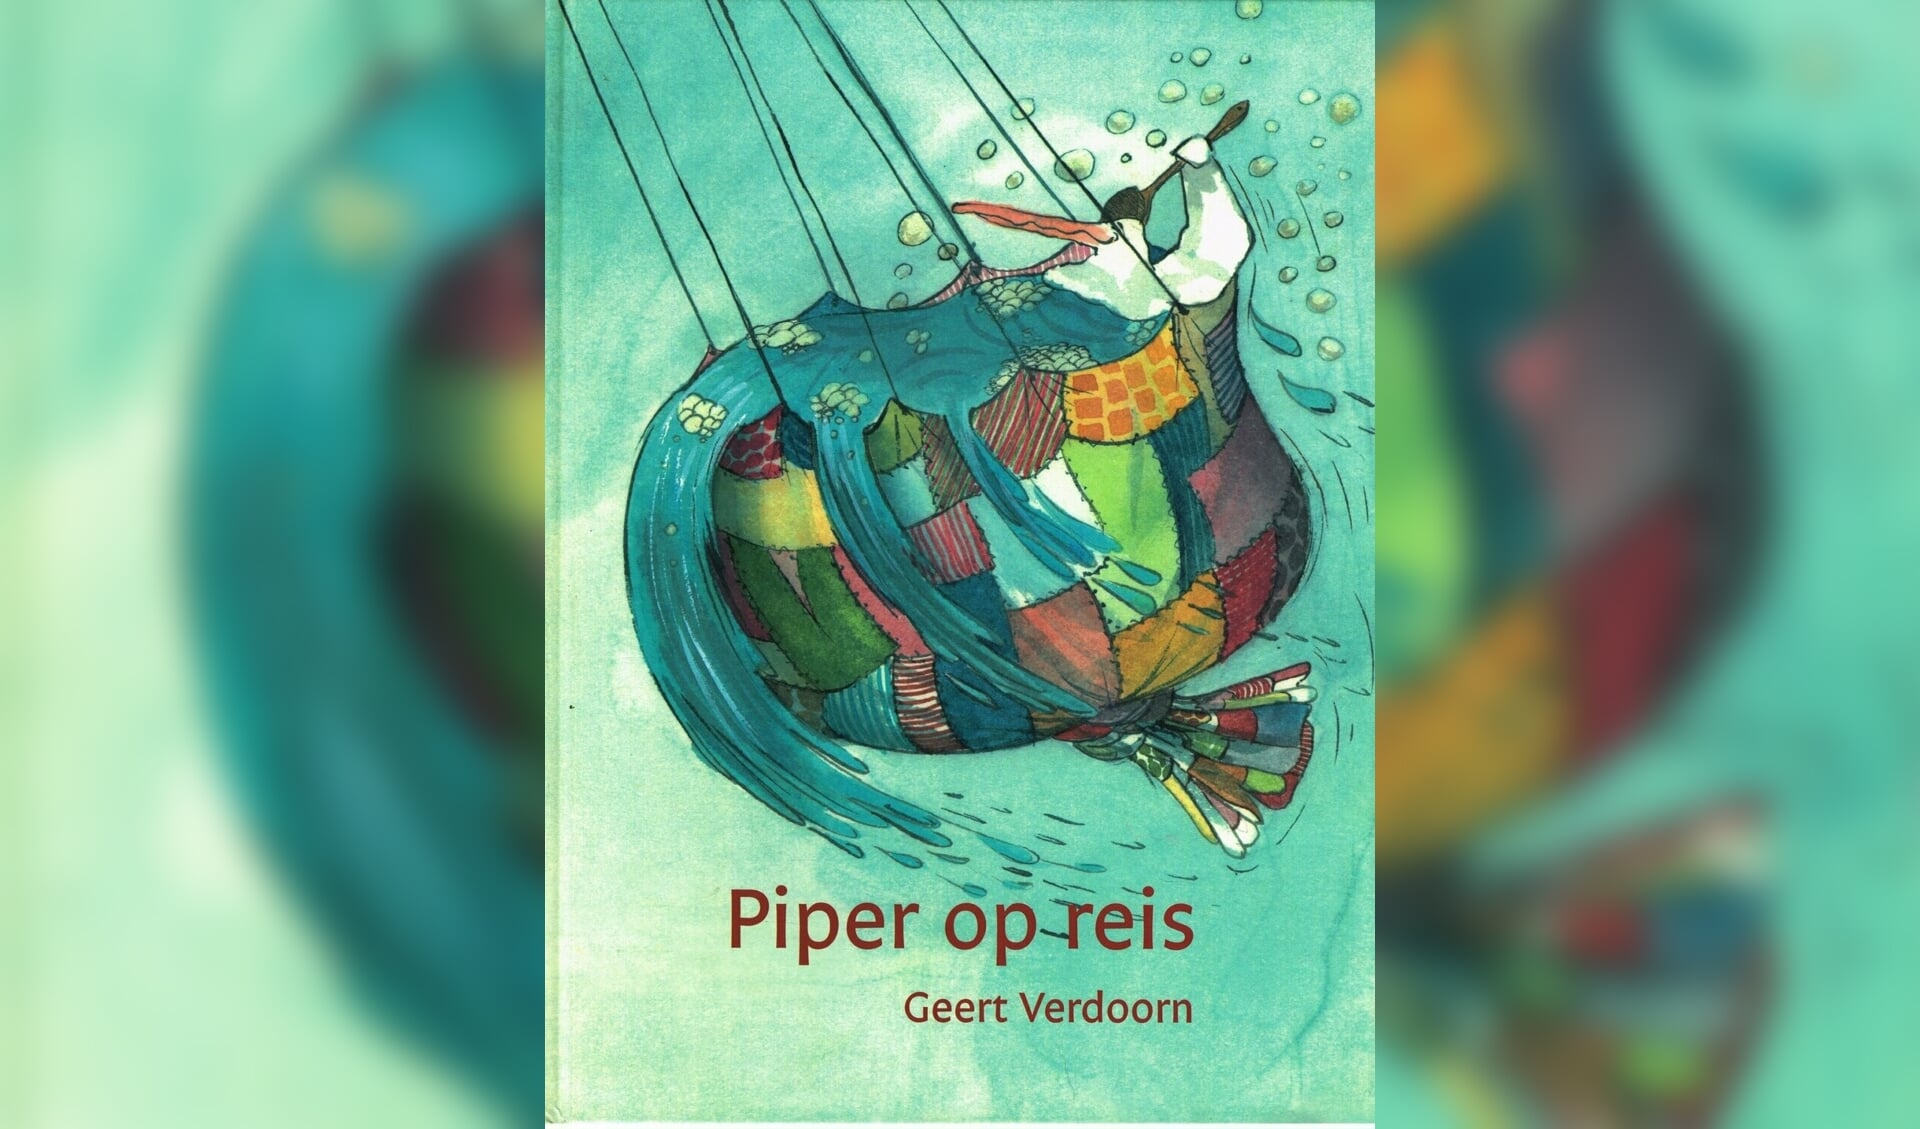 Piper op reis van Geert Verdoorn